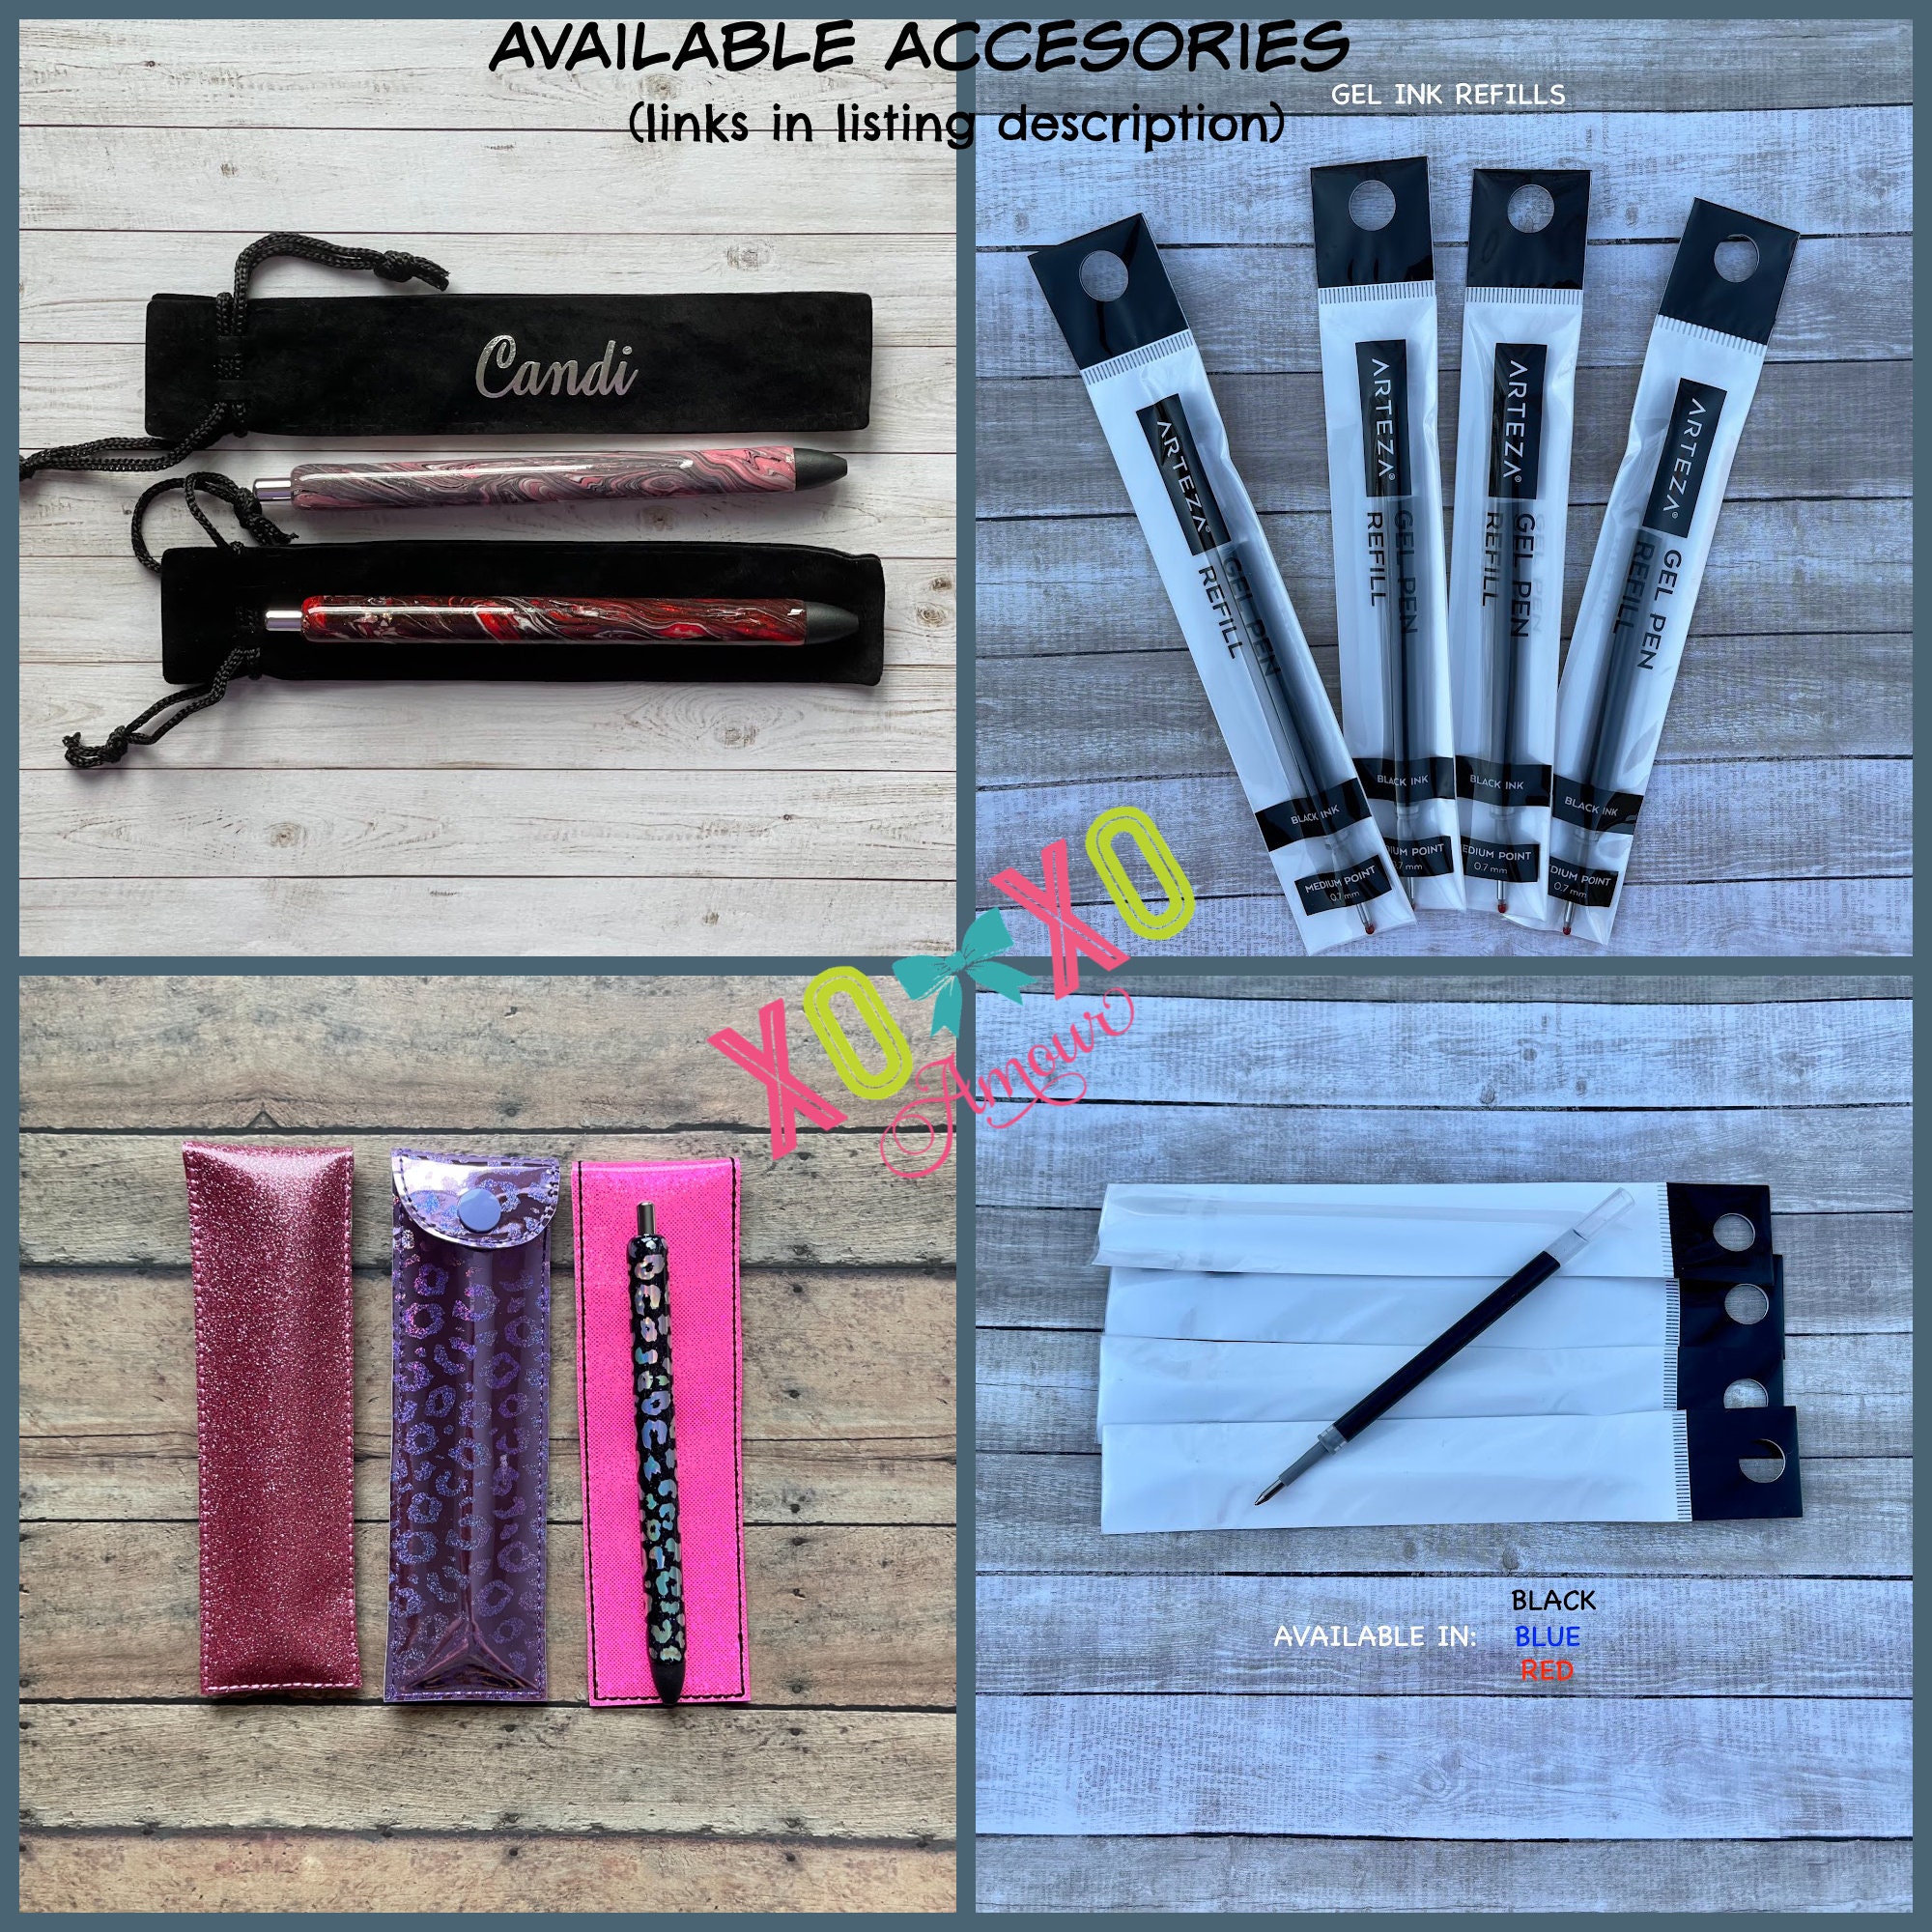 Personalized Glitter Pens, Glitter Gel Pens, Epoxy Pens,inkjoy Gel  Pen,customized Pens, Refillable Custom Gel Pens,teacher Gifts, Xoxo Amour 